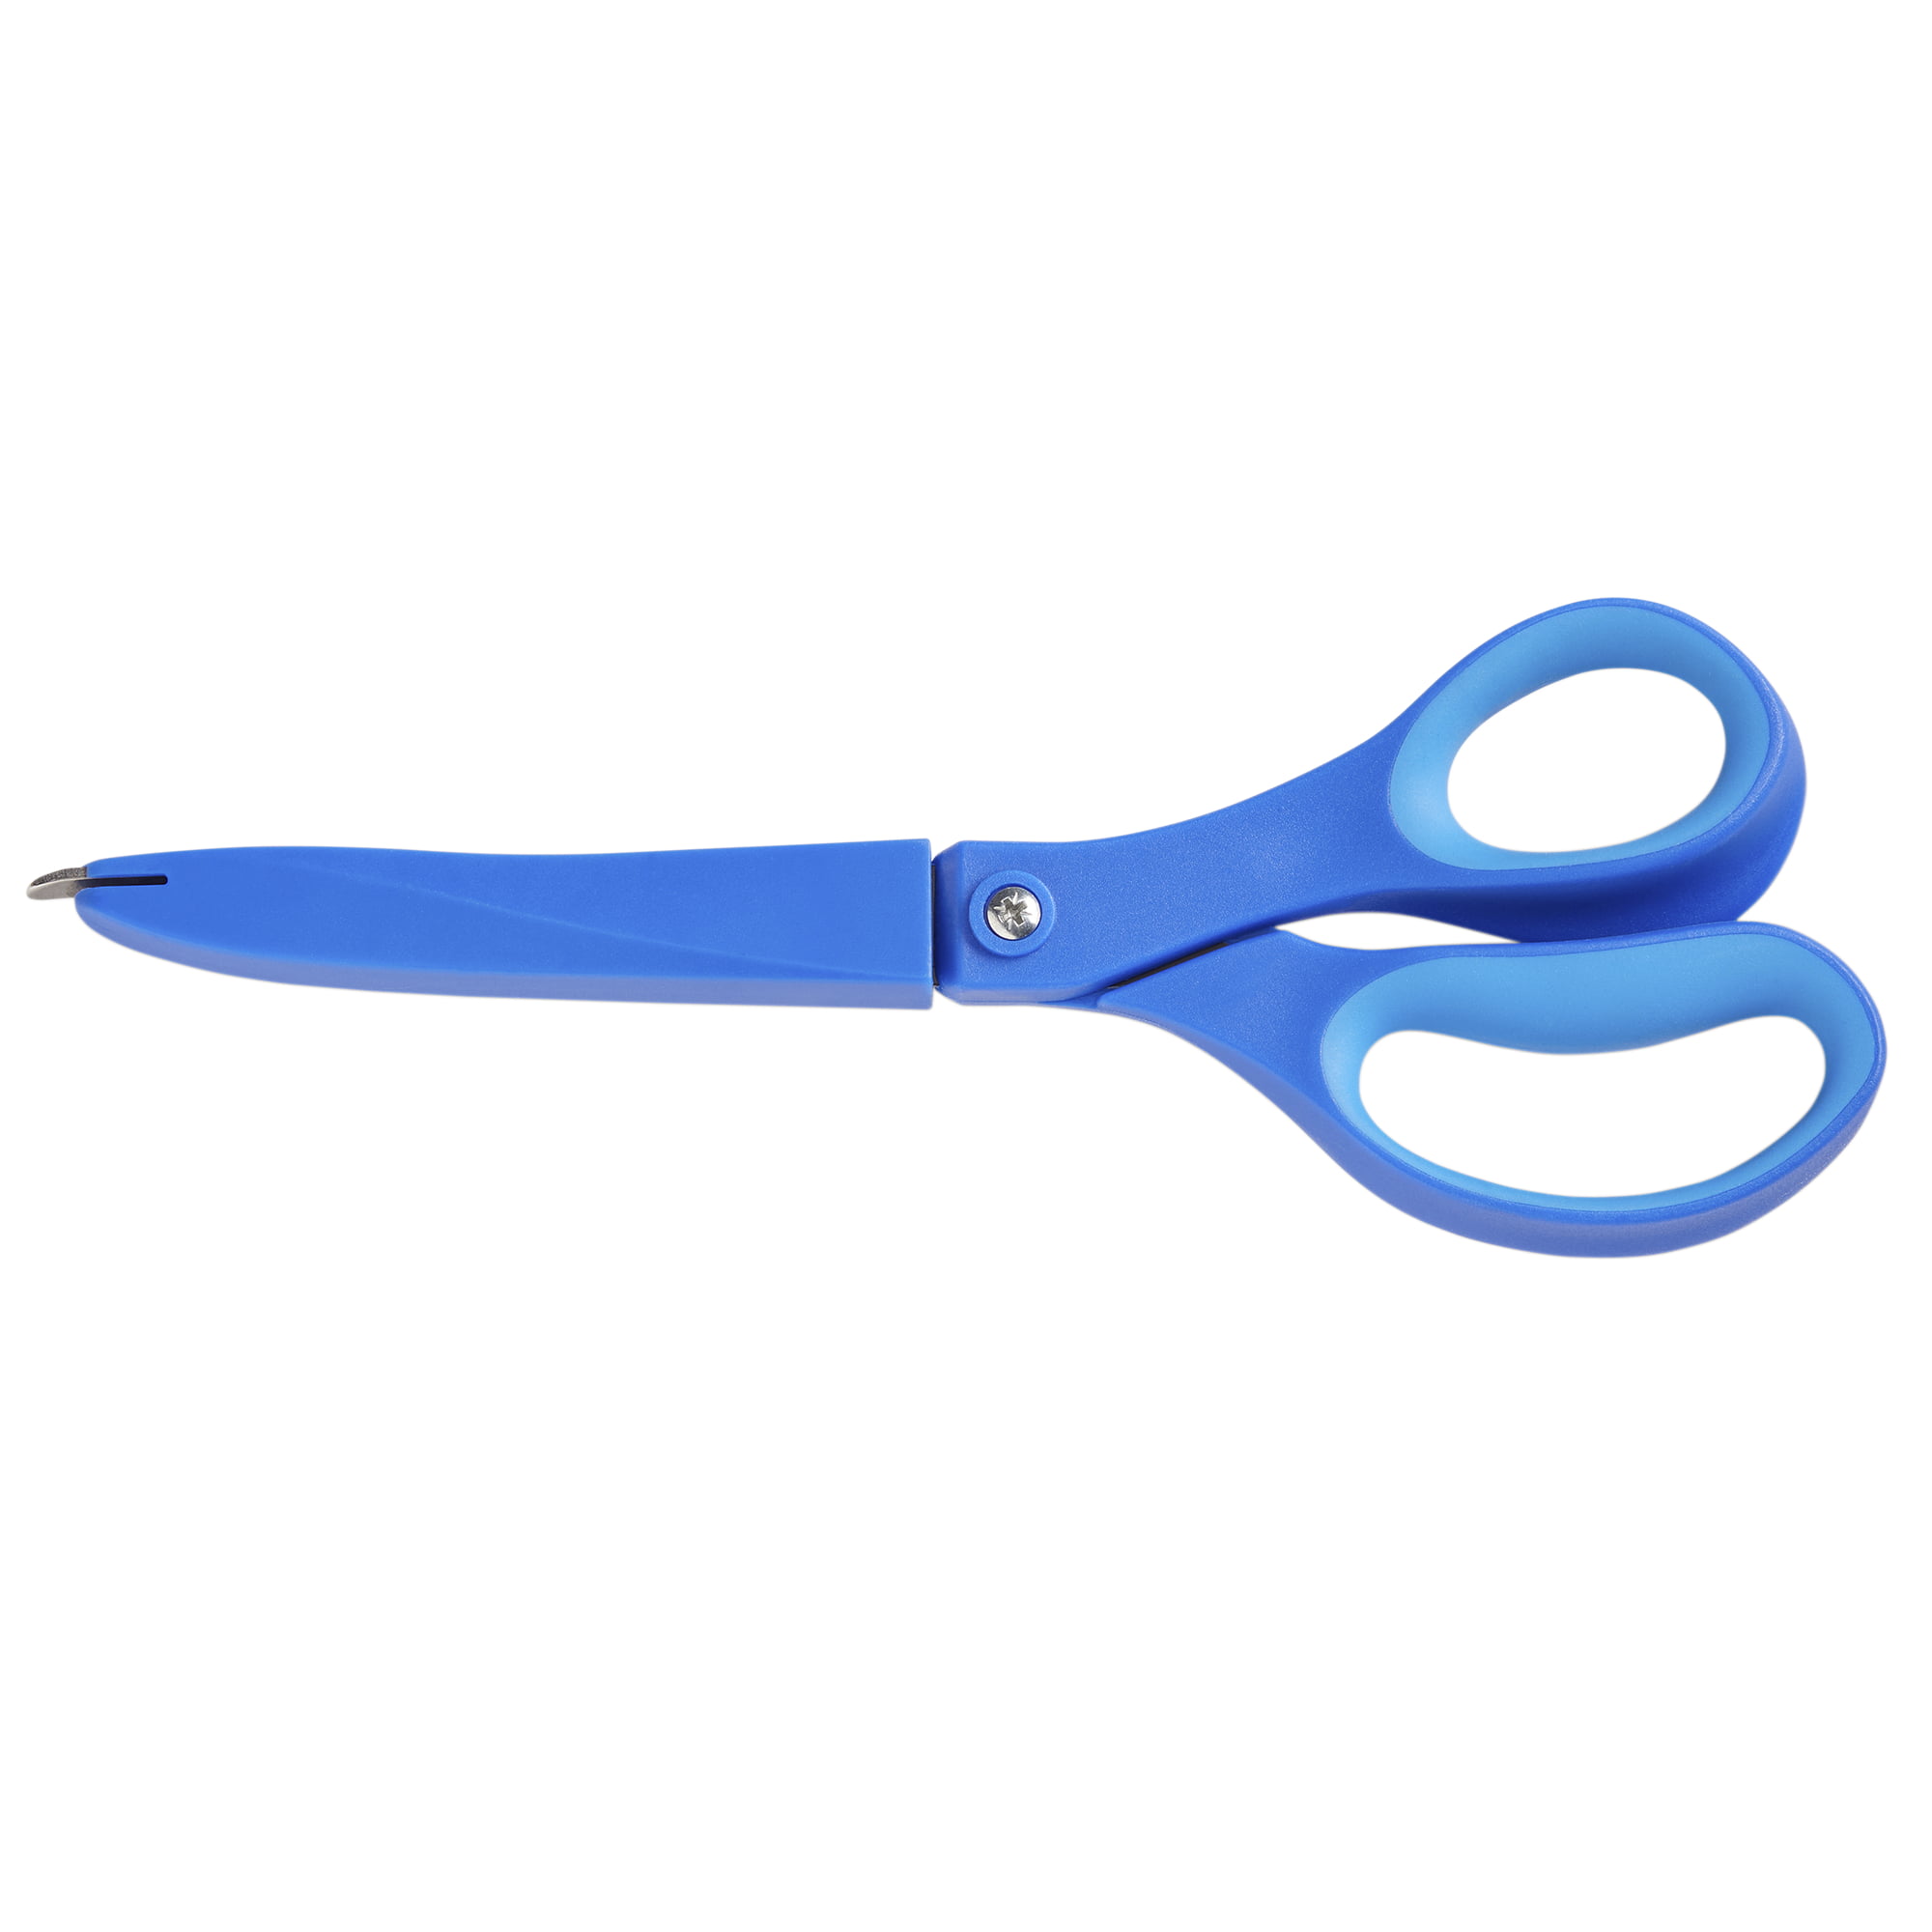 Teacher - Adult Scissors from School Specialty